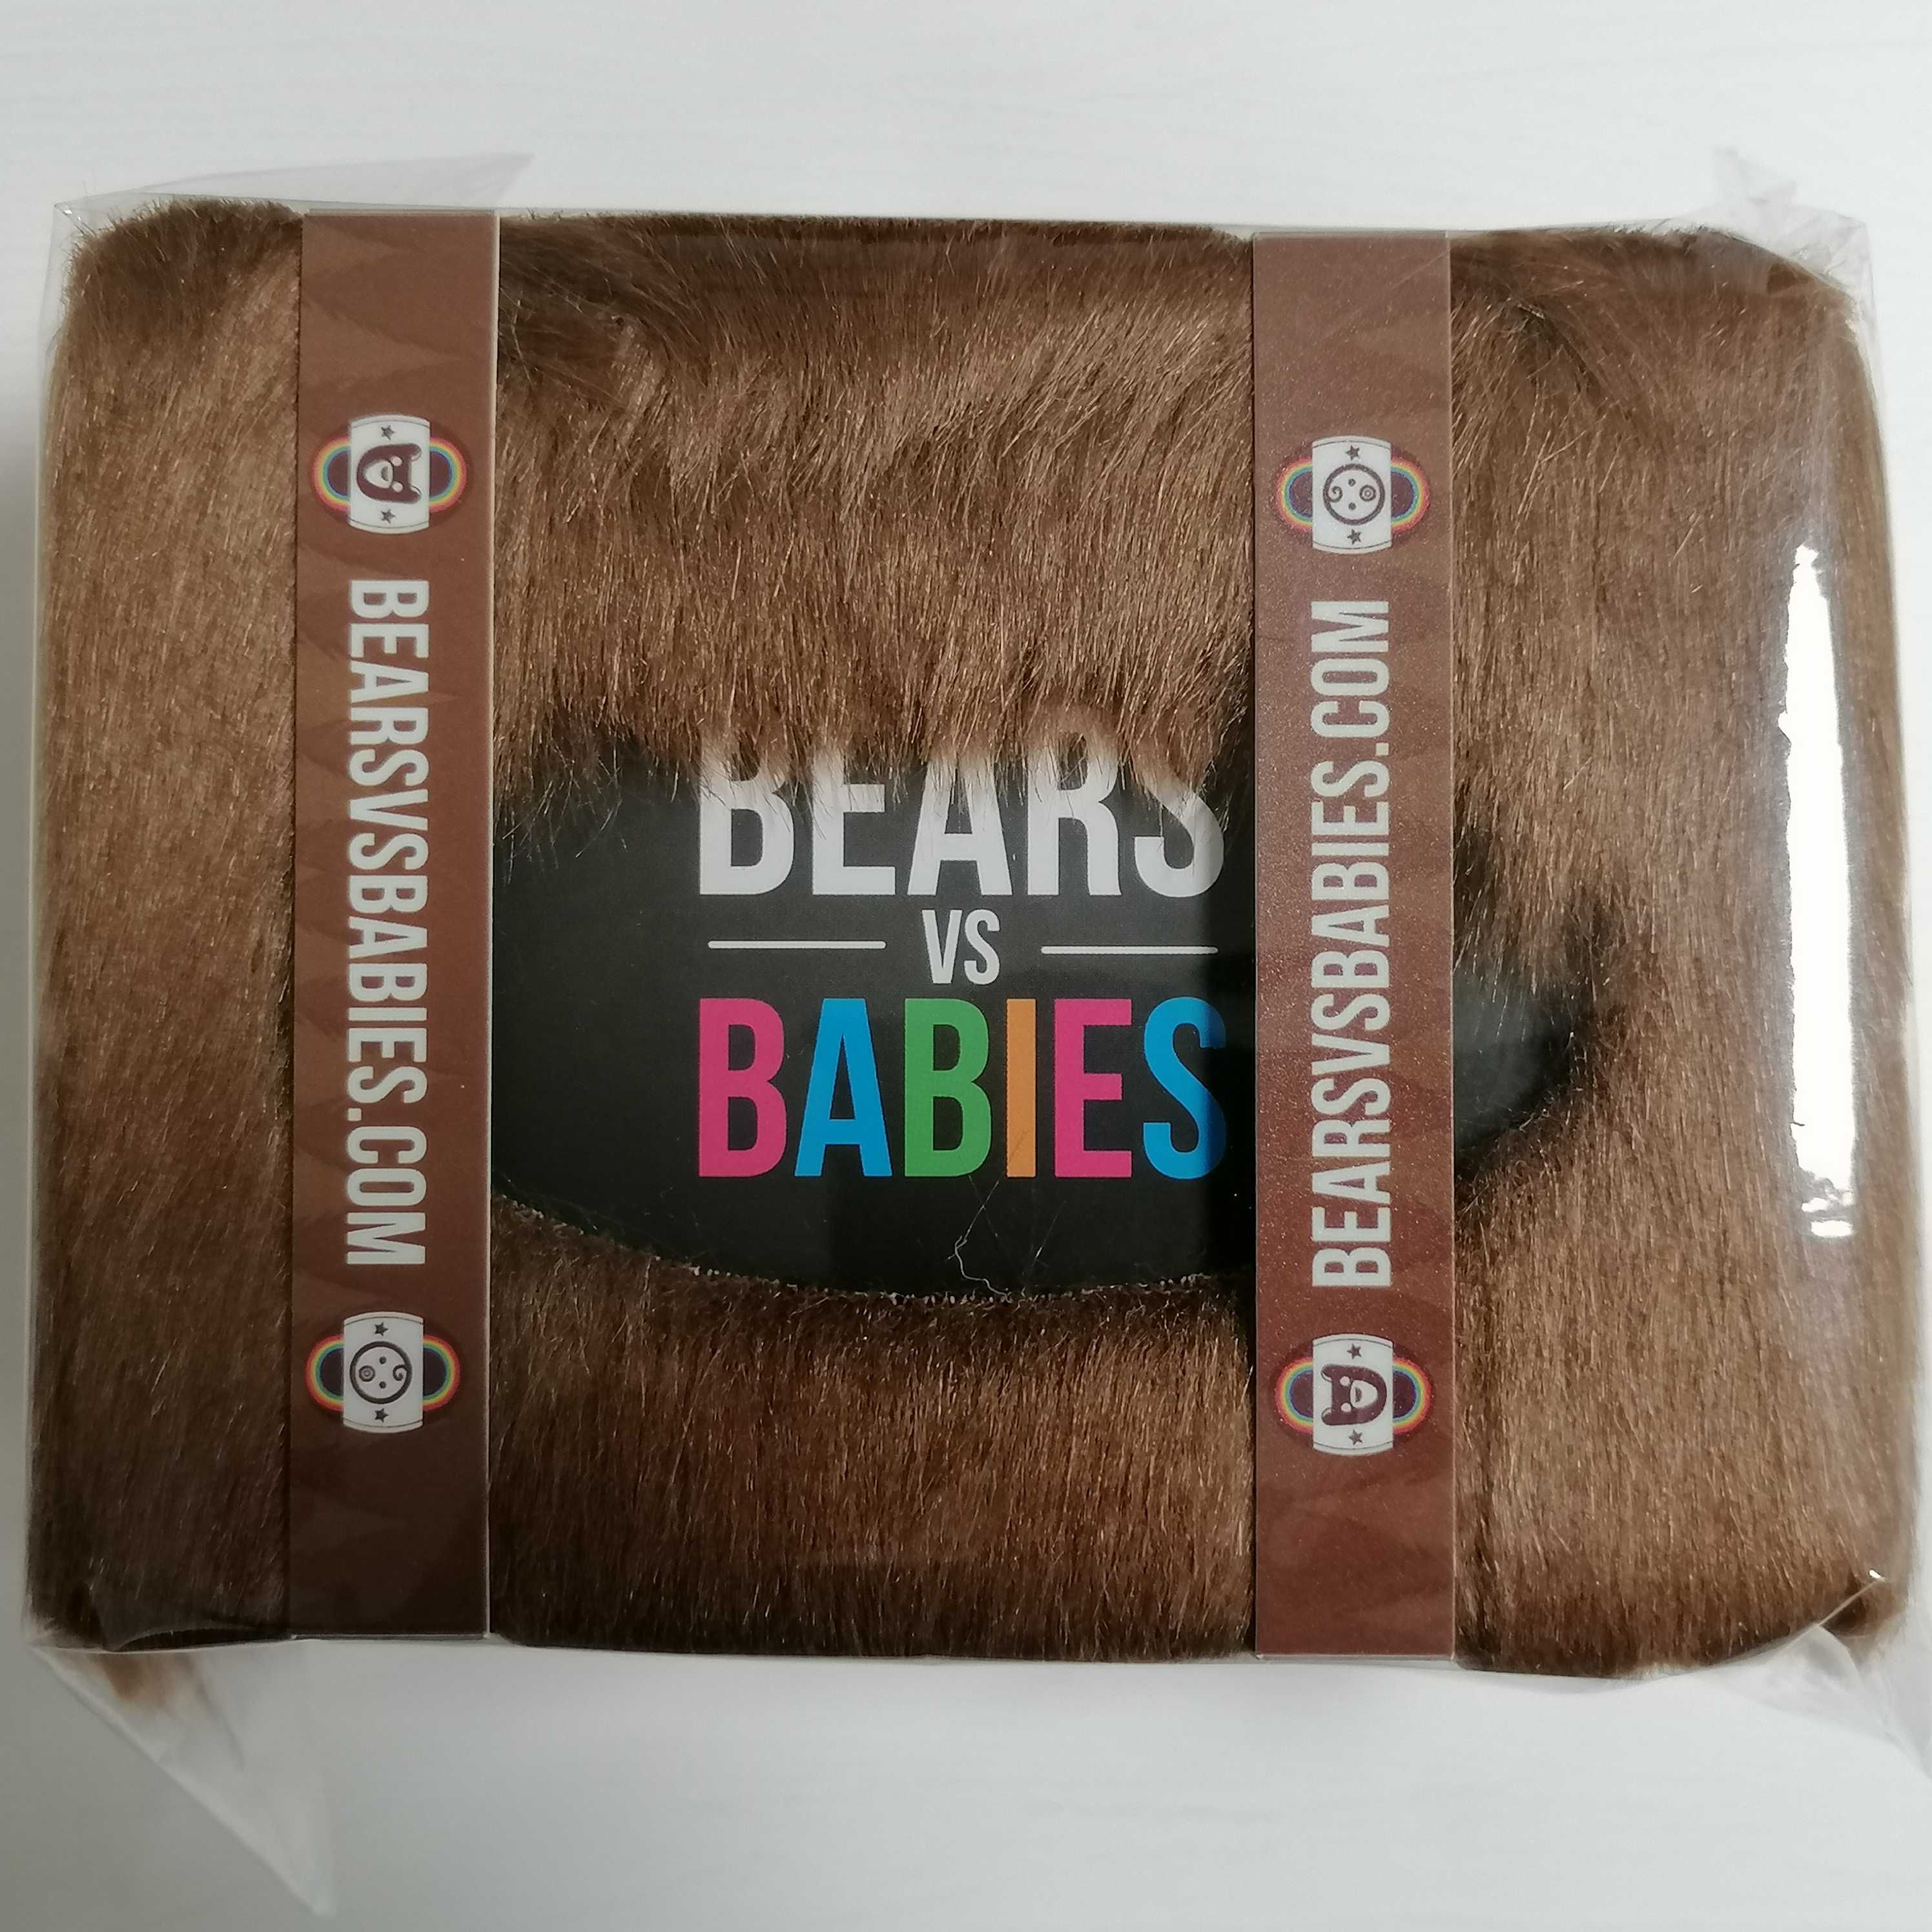 Bears vs Babies - jogo de cartas